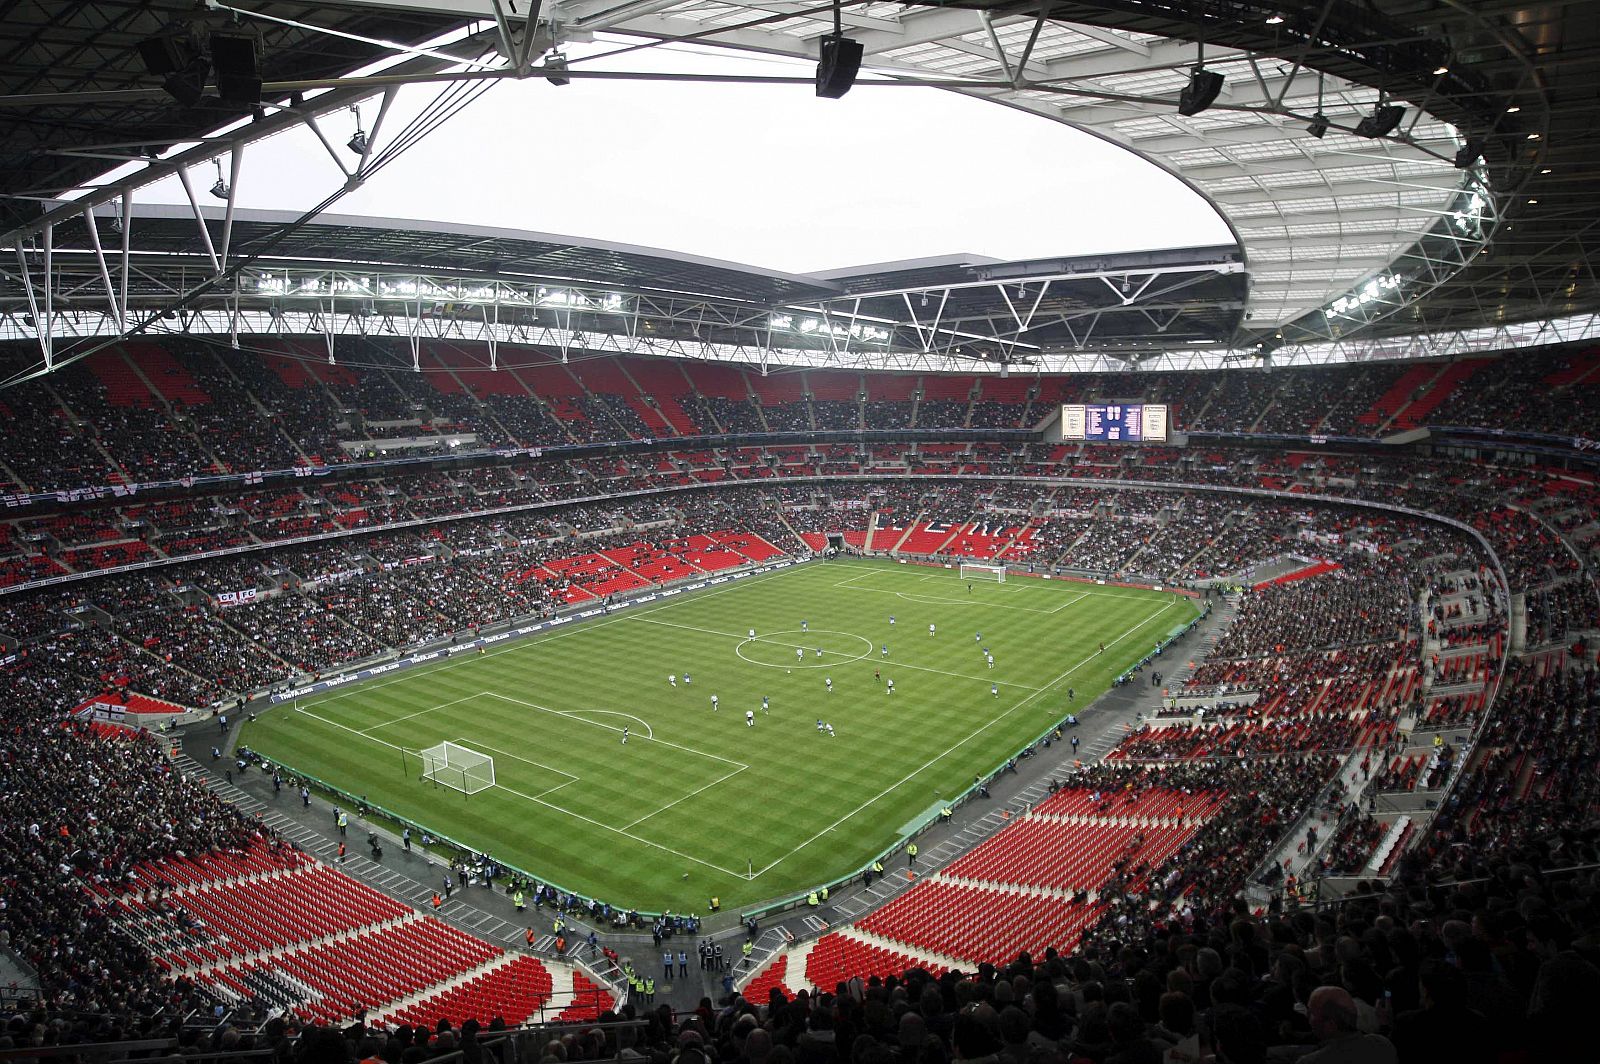 Vista del Estadio de Wembley de Londres